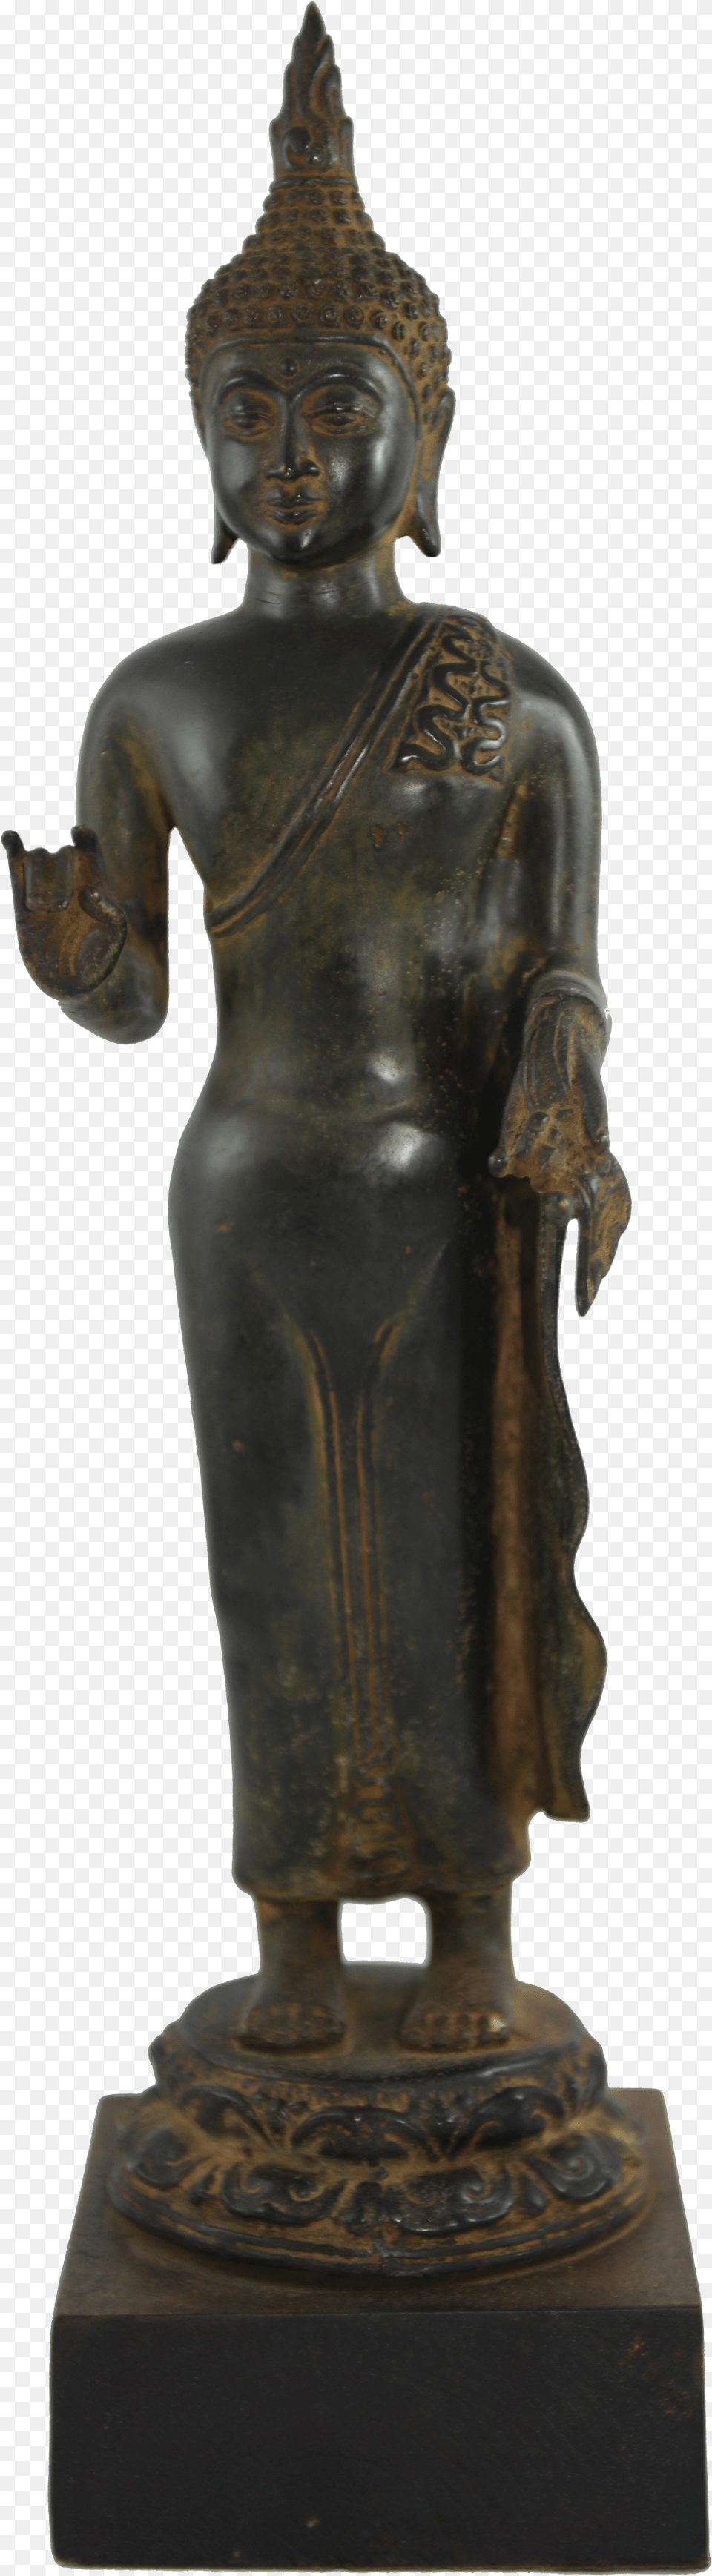 Buddha Statue Buddharupa, Bronze, Adult, Man, Male Png Image